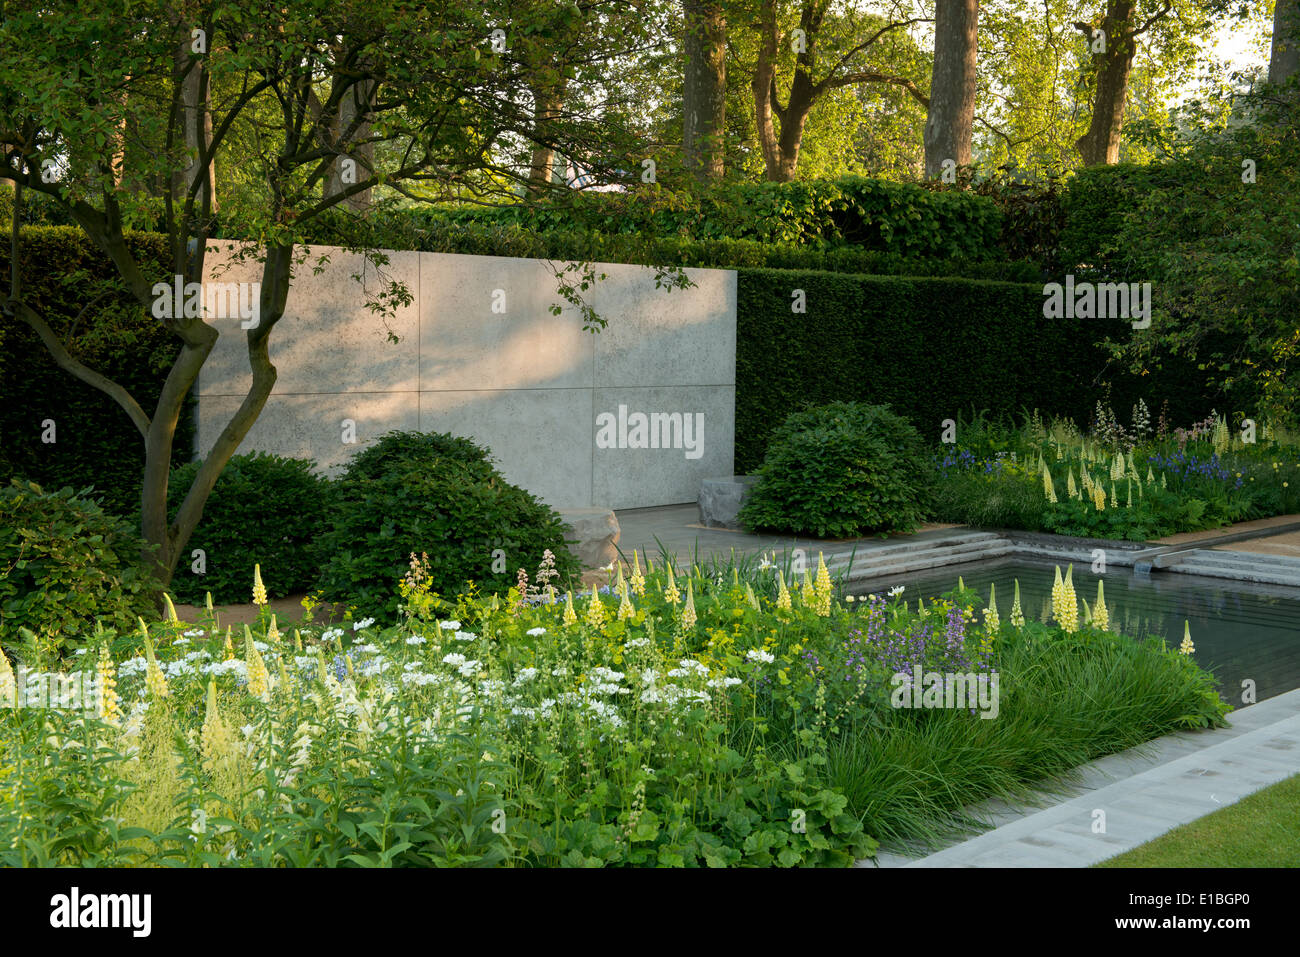 Il giardino Laurent-Perrier, miglior spettacolo giardino vincitore al Chelsea Flower Show 2014, London, Regno Unito Foto Stock